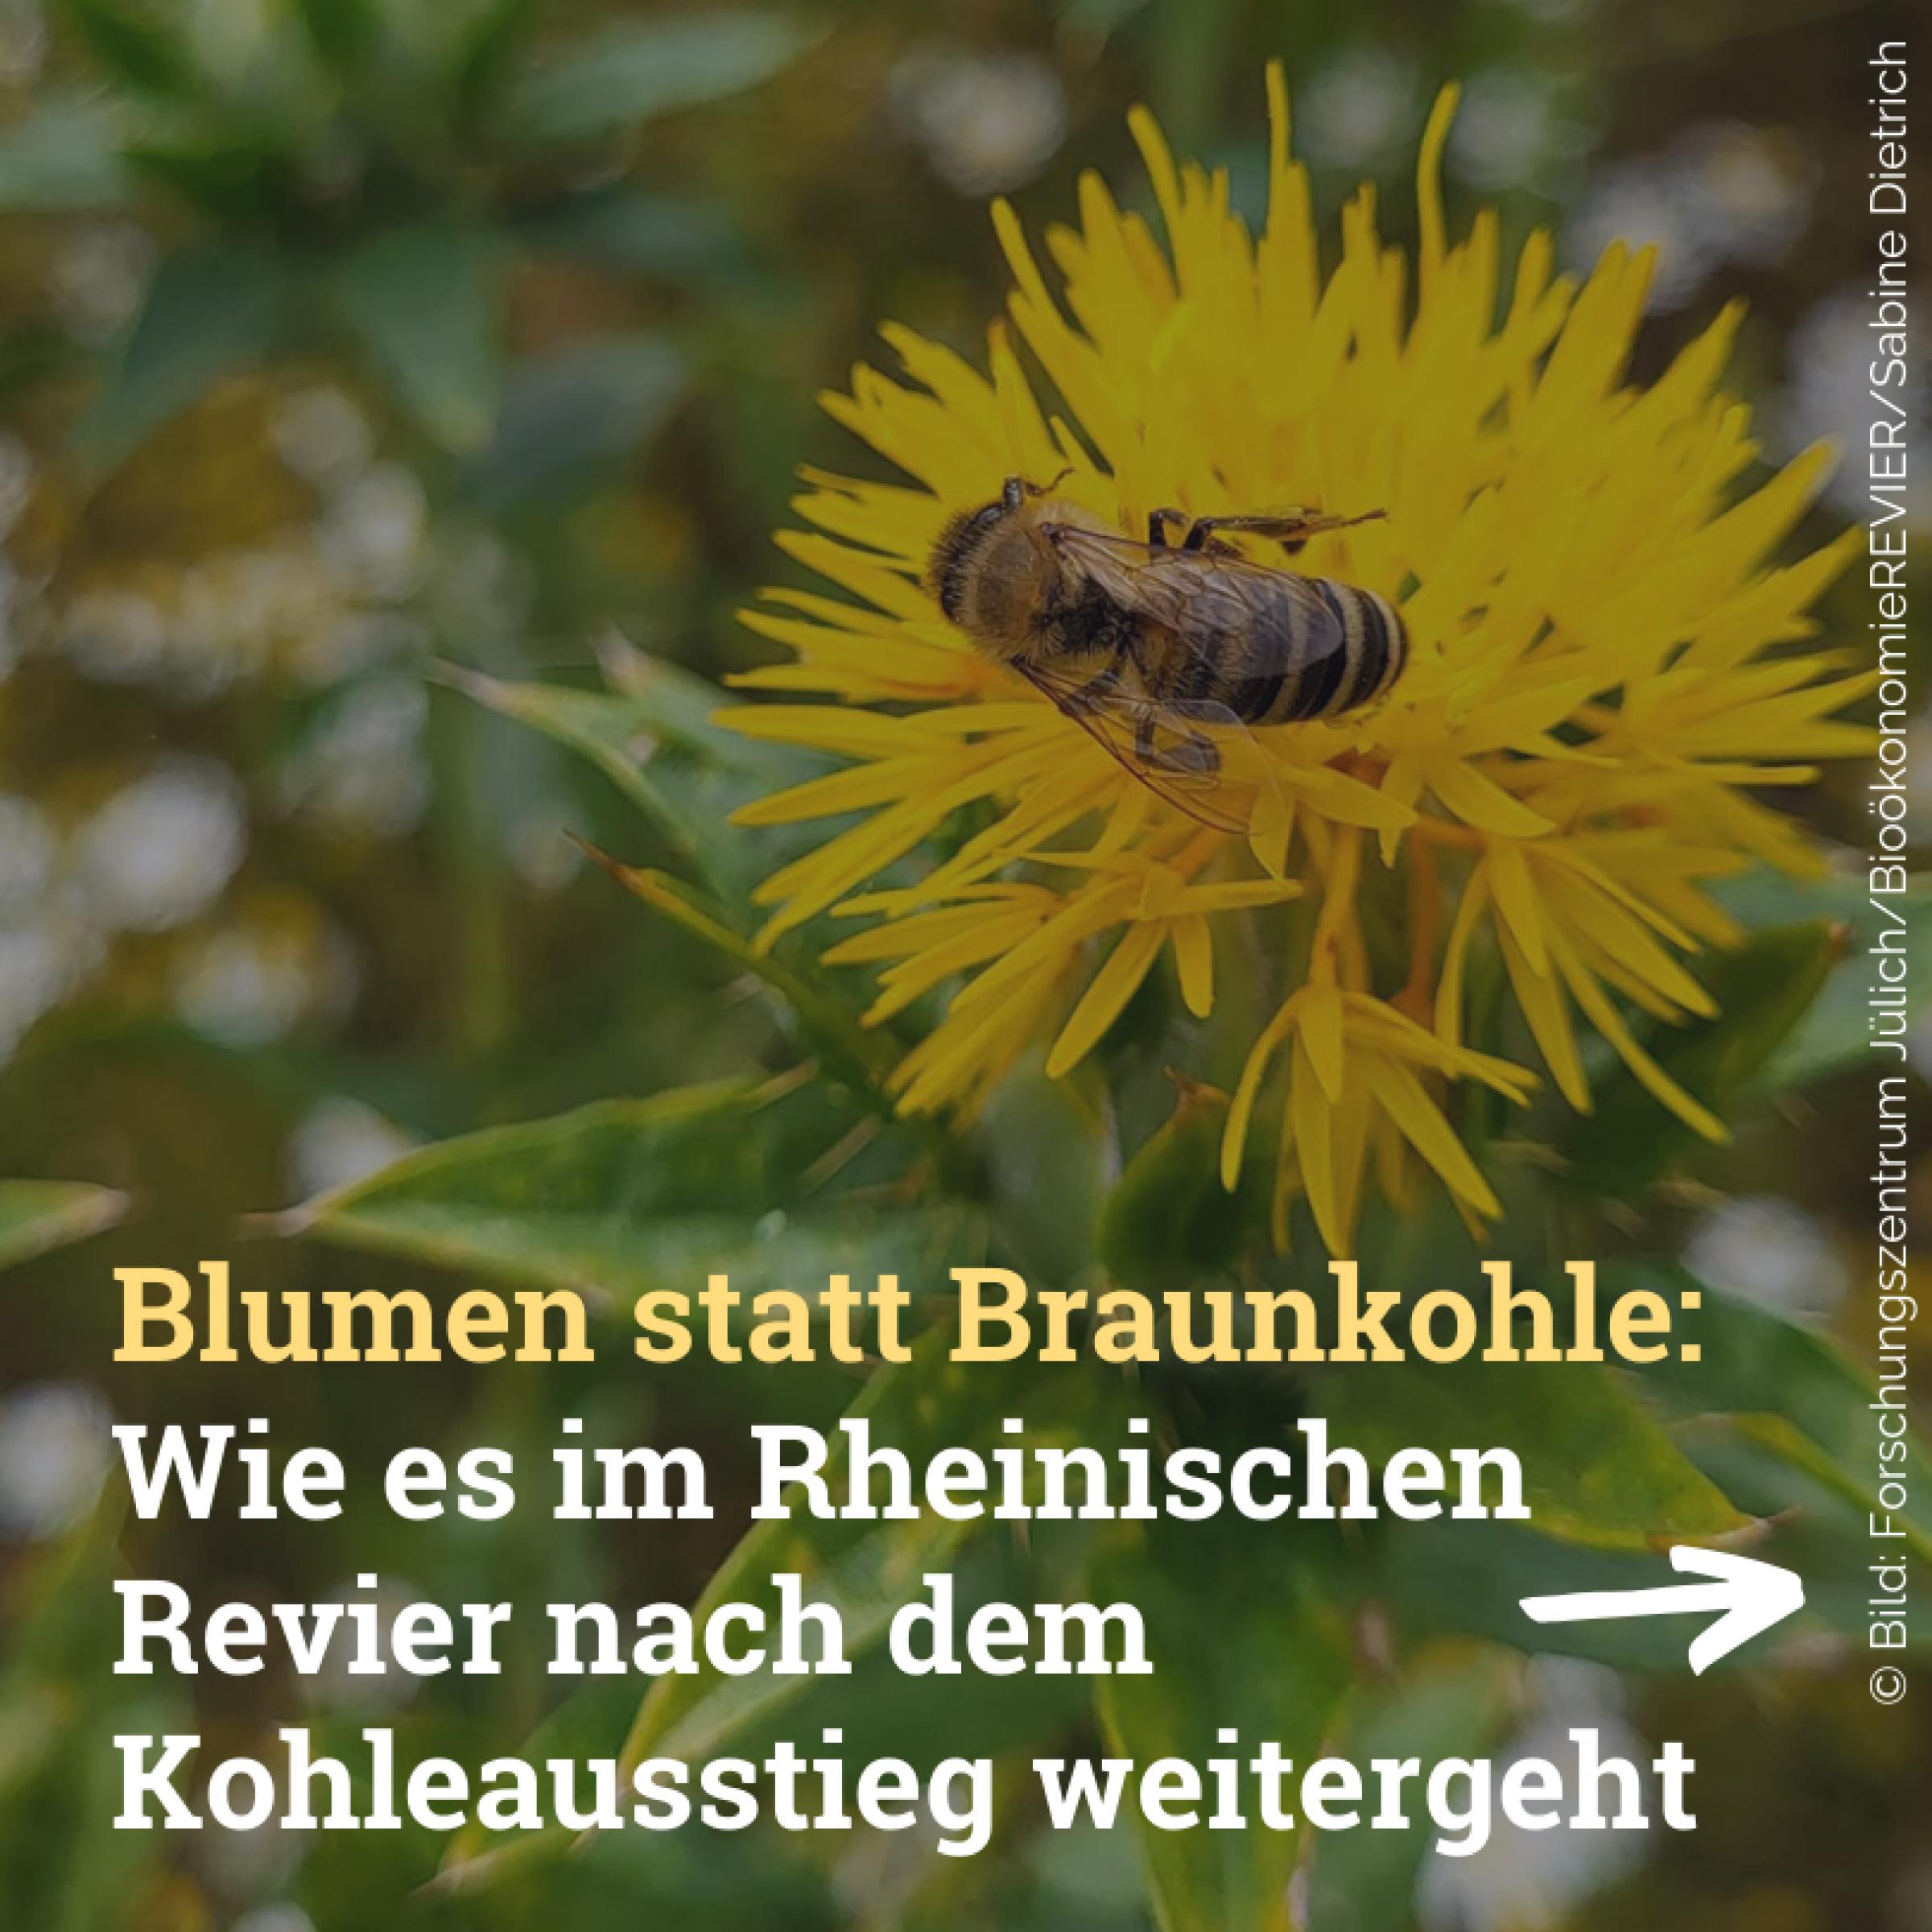 Blumen statt Braunkohle: Wie es im Rheinischen Revier nach dem Kohleausstieg weitergeht